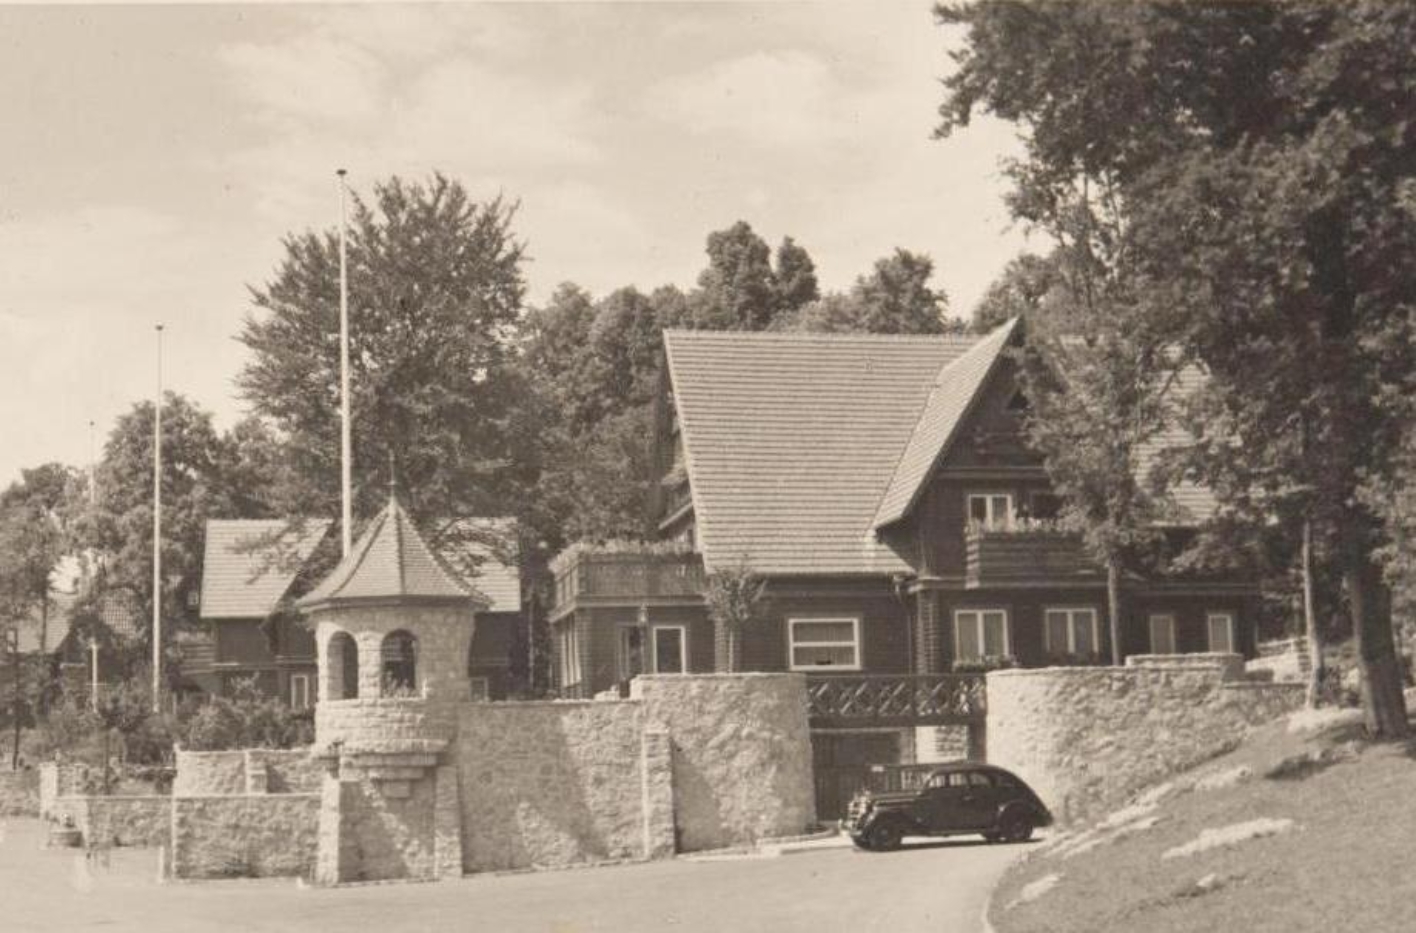 Gesamtansicht der Villa Koch in der Führersiedlung. Das Haus im Heimatstil ist von einer Ziermauer mit Ecktürmchen umgeben. Vor der Einfahrt parkt ein PKW. Im Hintergrund zwei weitere Villen.